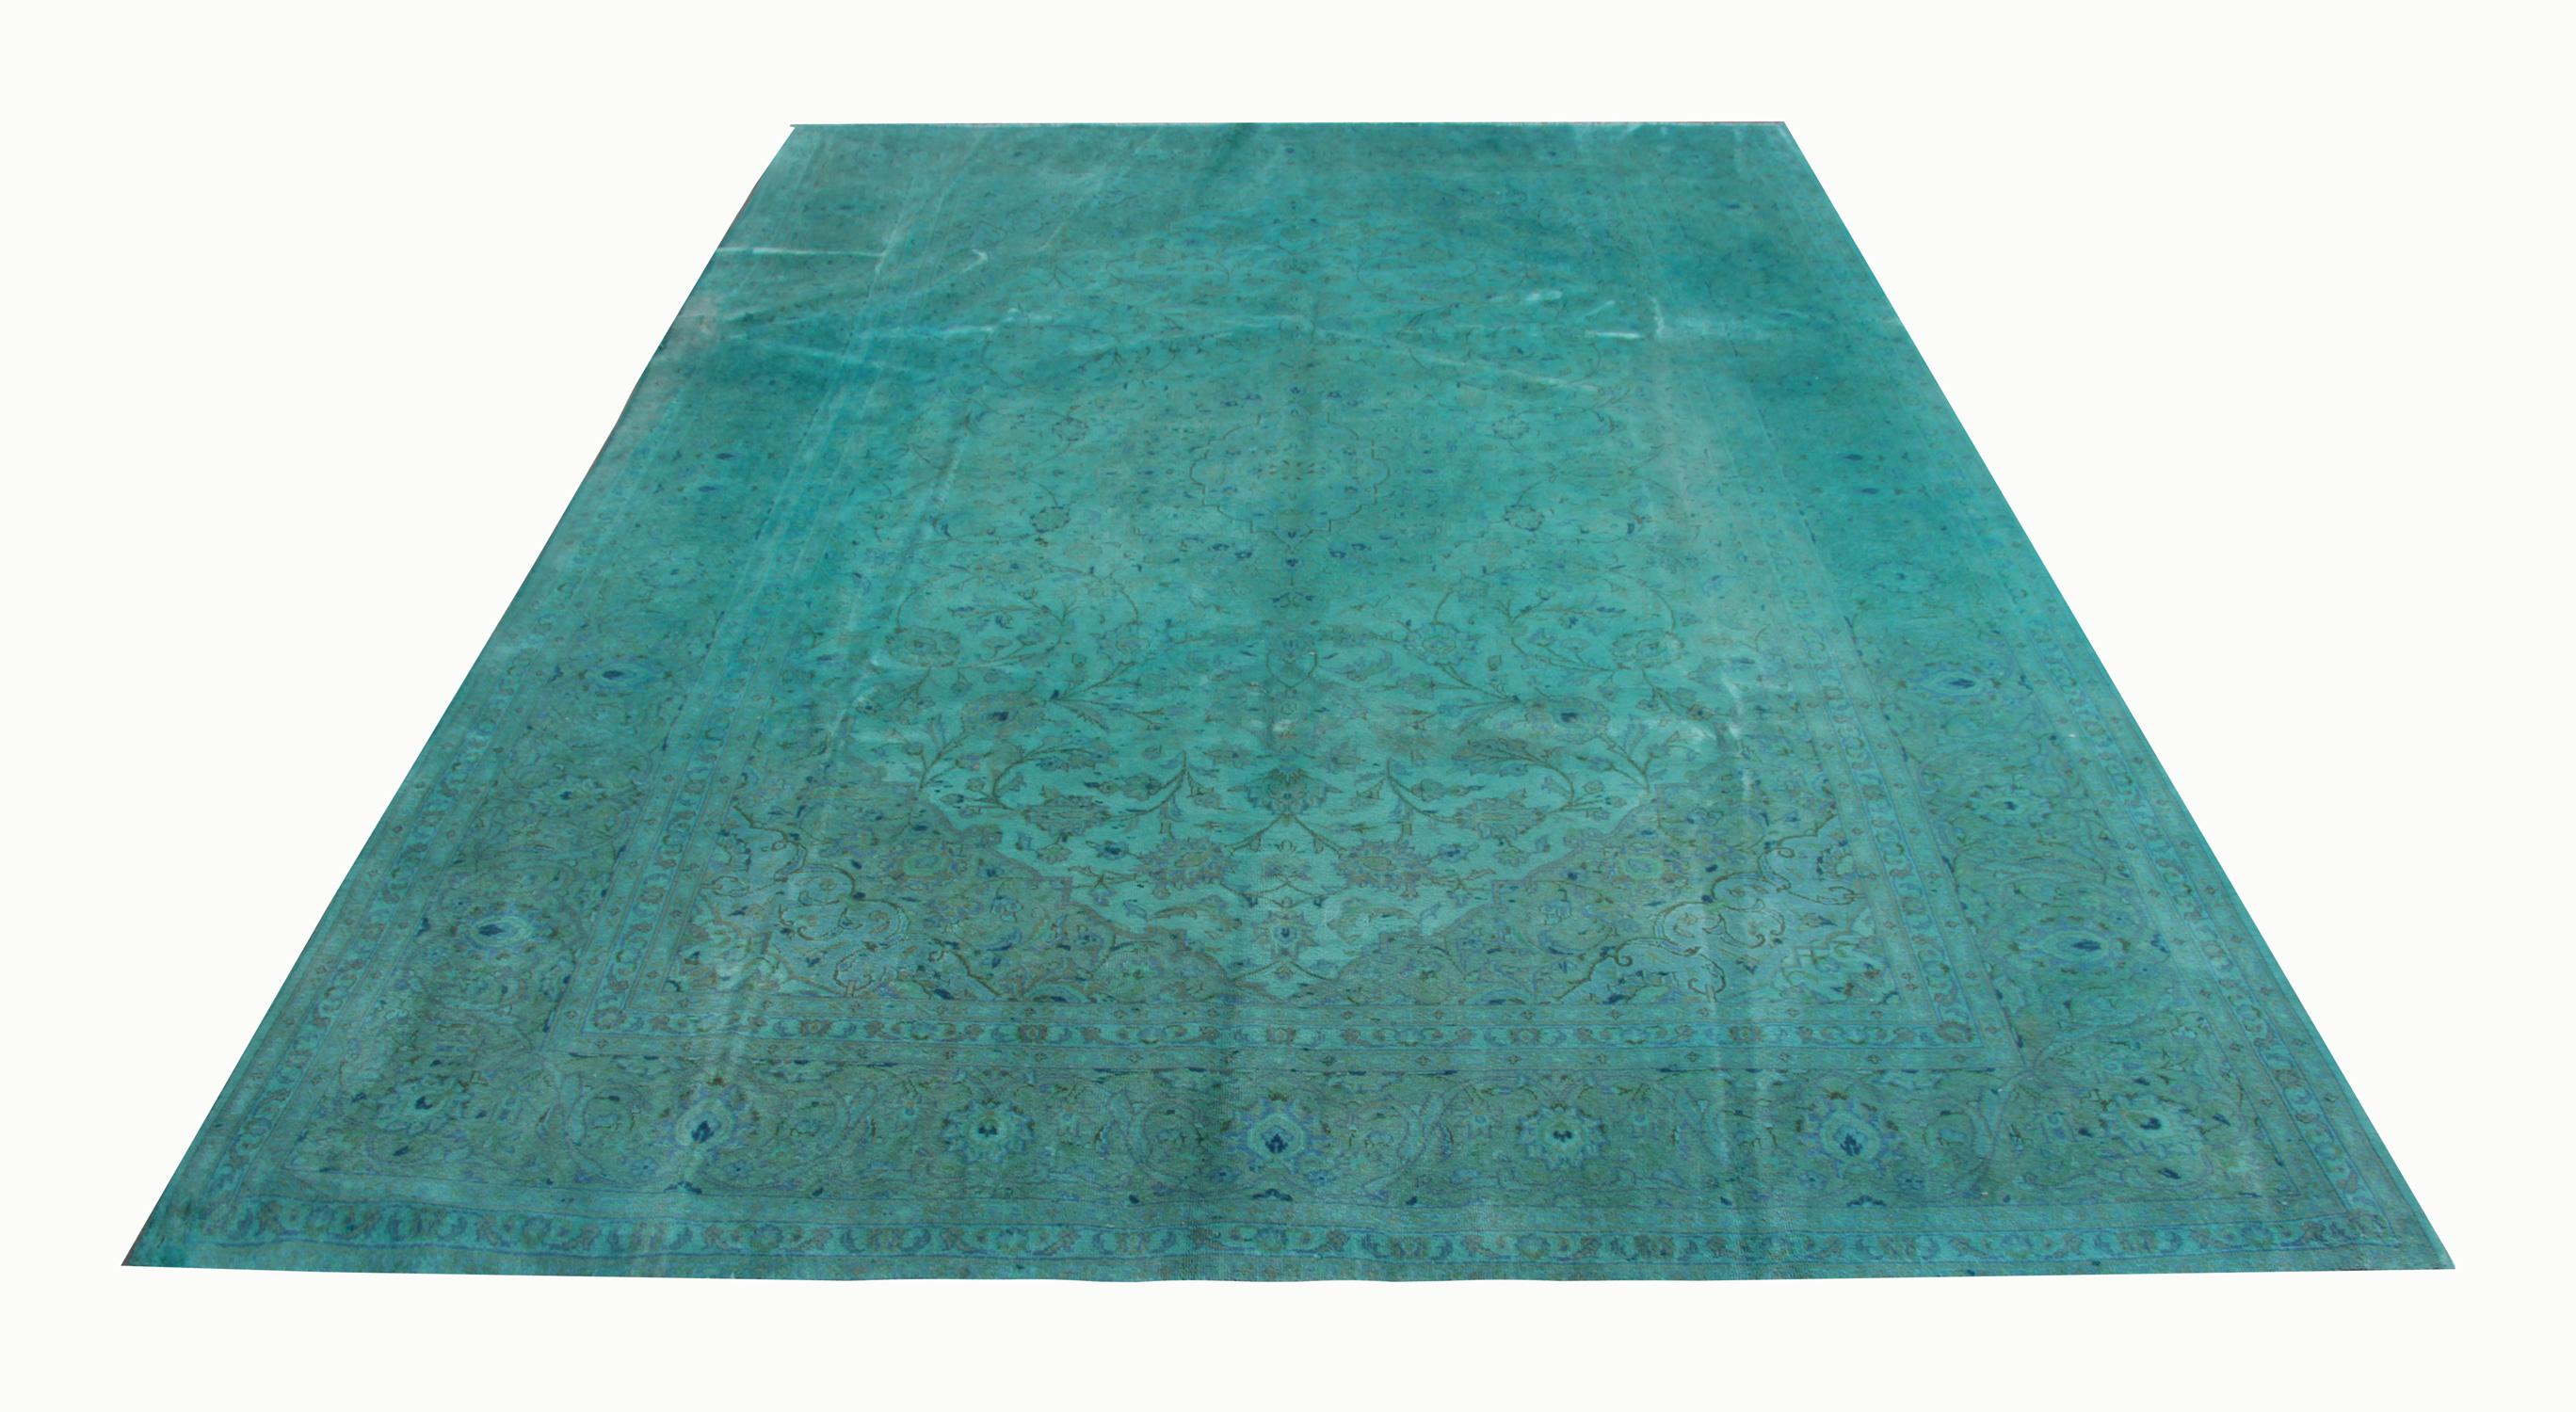 Ce tapis oriental fait à la main, de couleur turquoise et surteinté, de style traditionnel, serait une excellente pièce de décoration intérieure et un ajout fantastique à une collection de tapis de collection. Ce tapis a été patiné et peint à la